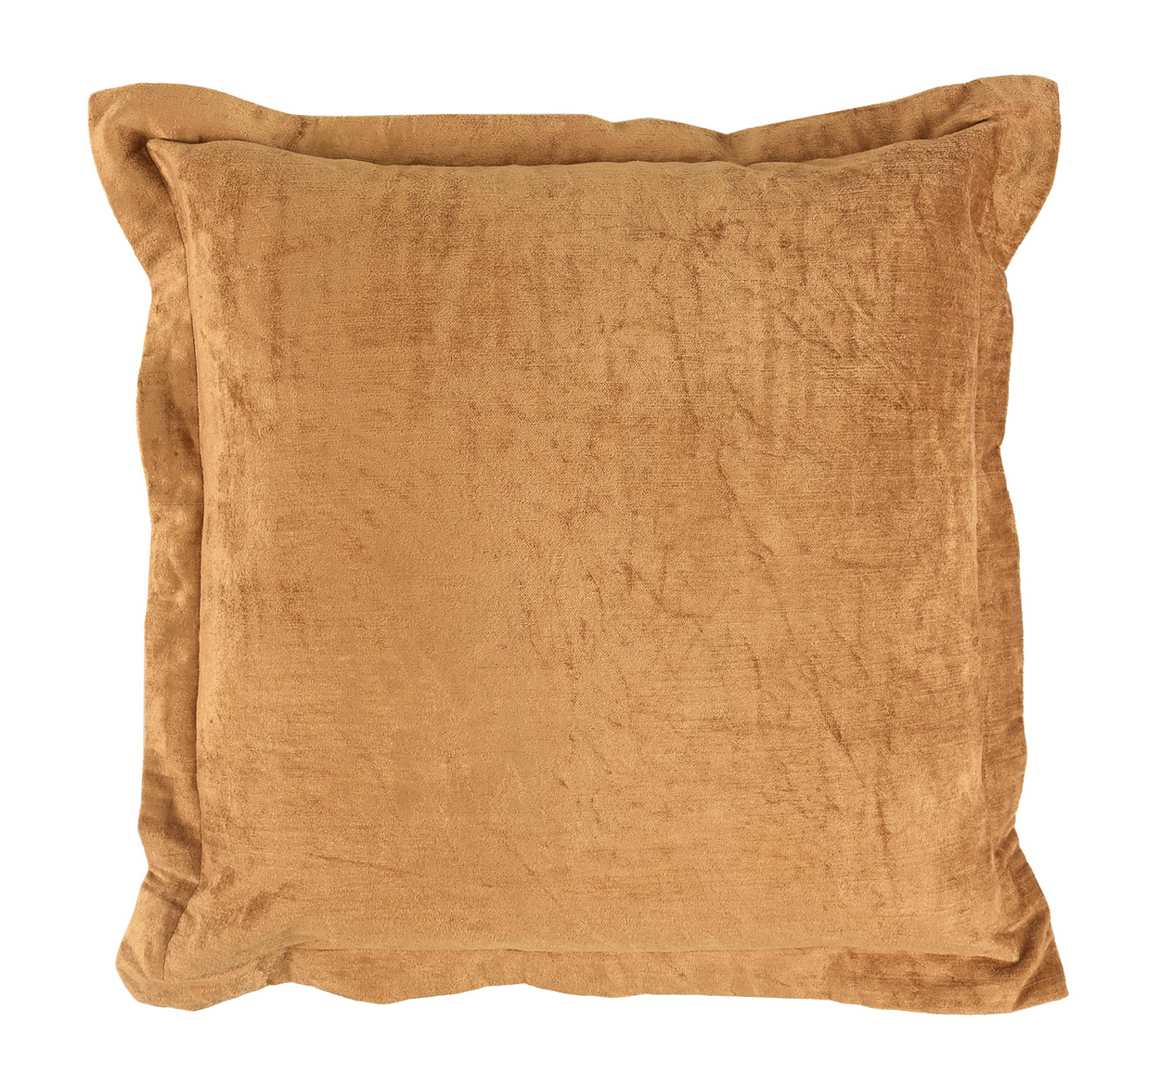 Lapis 22x22 Pillow - Harvest